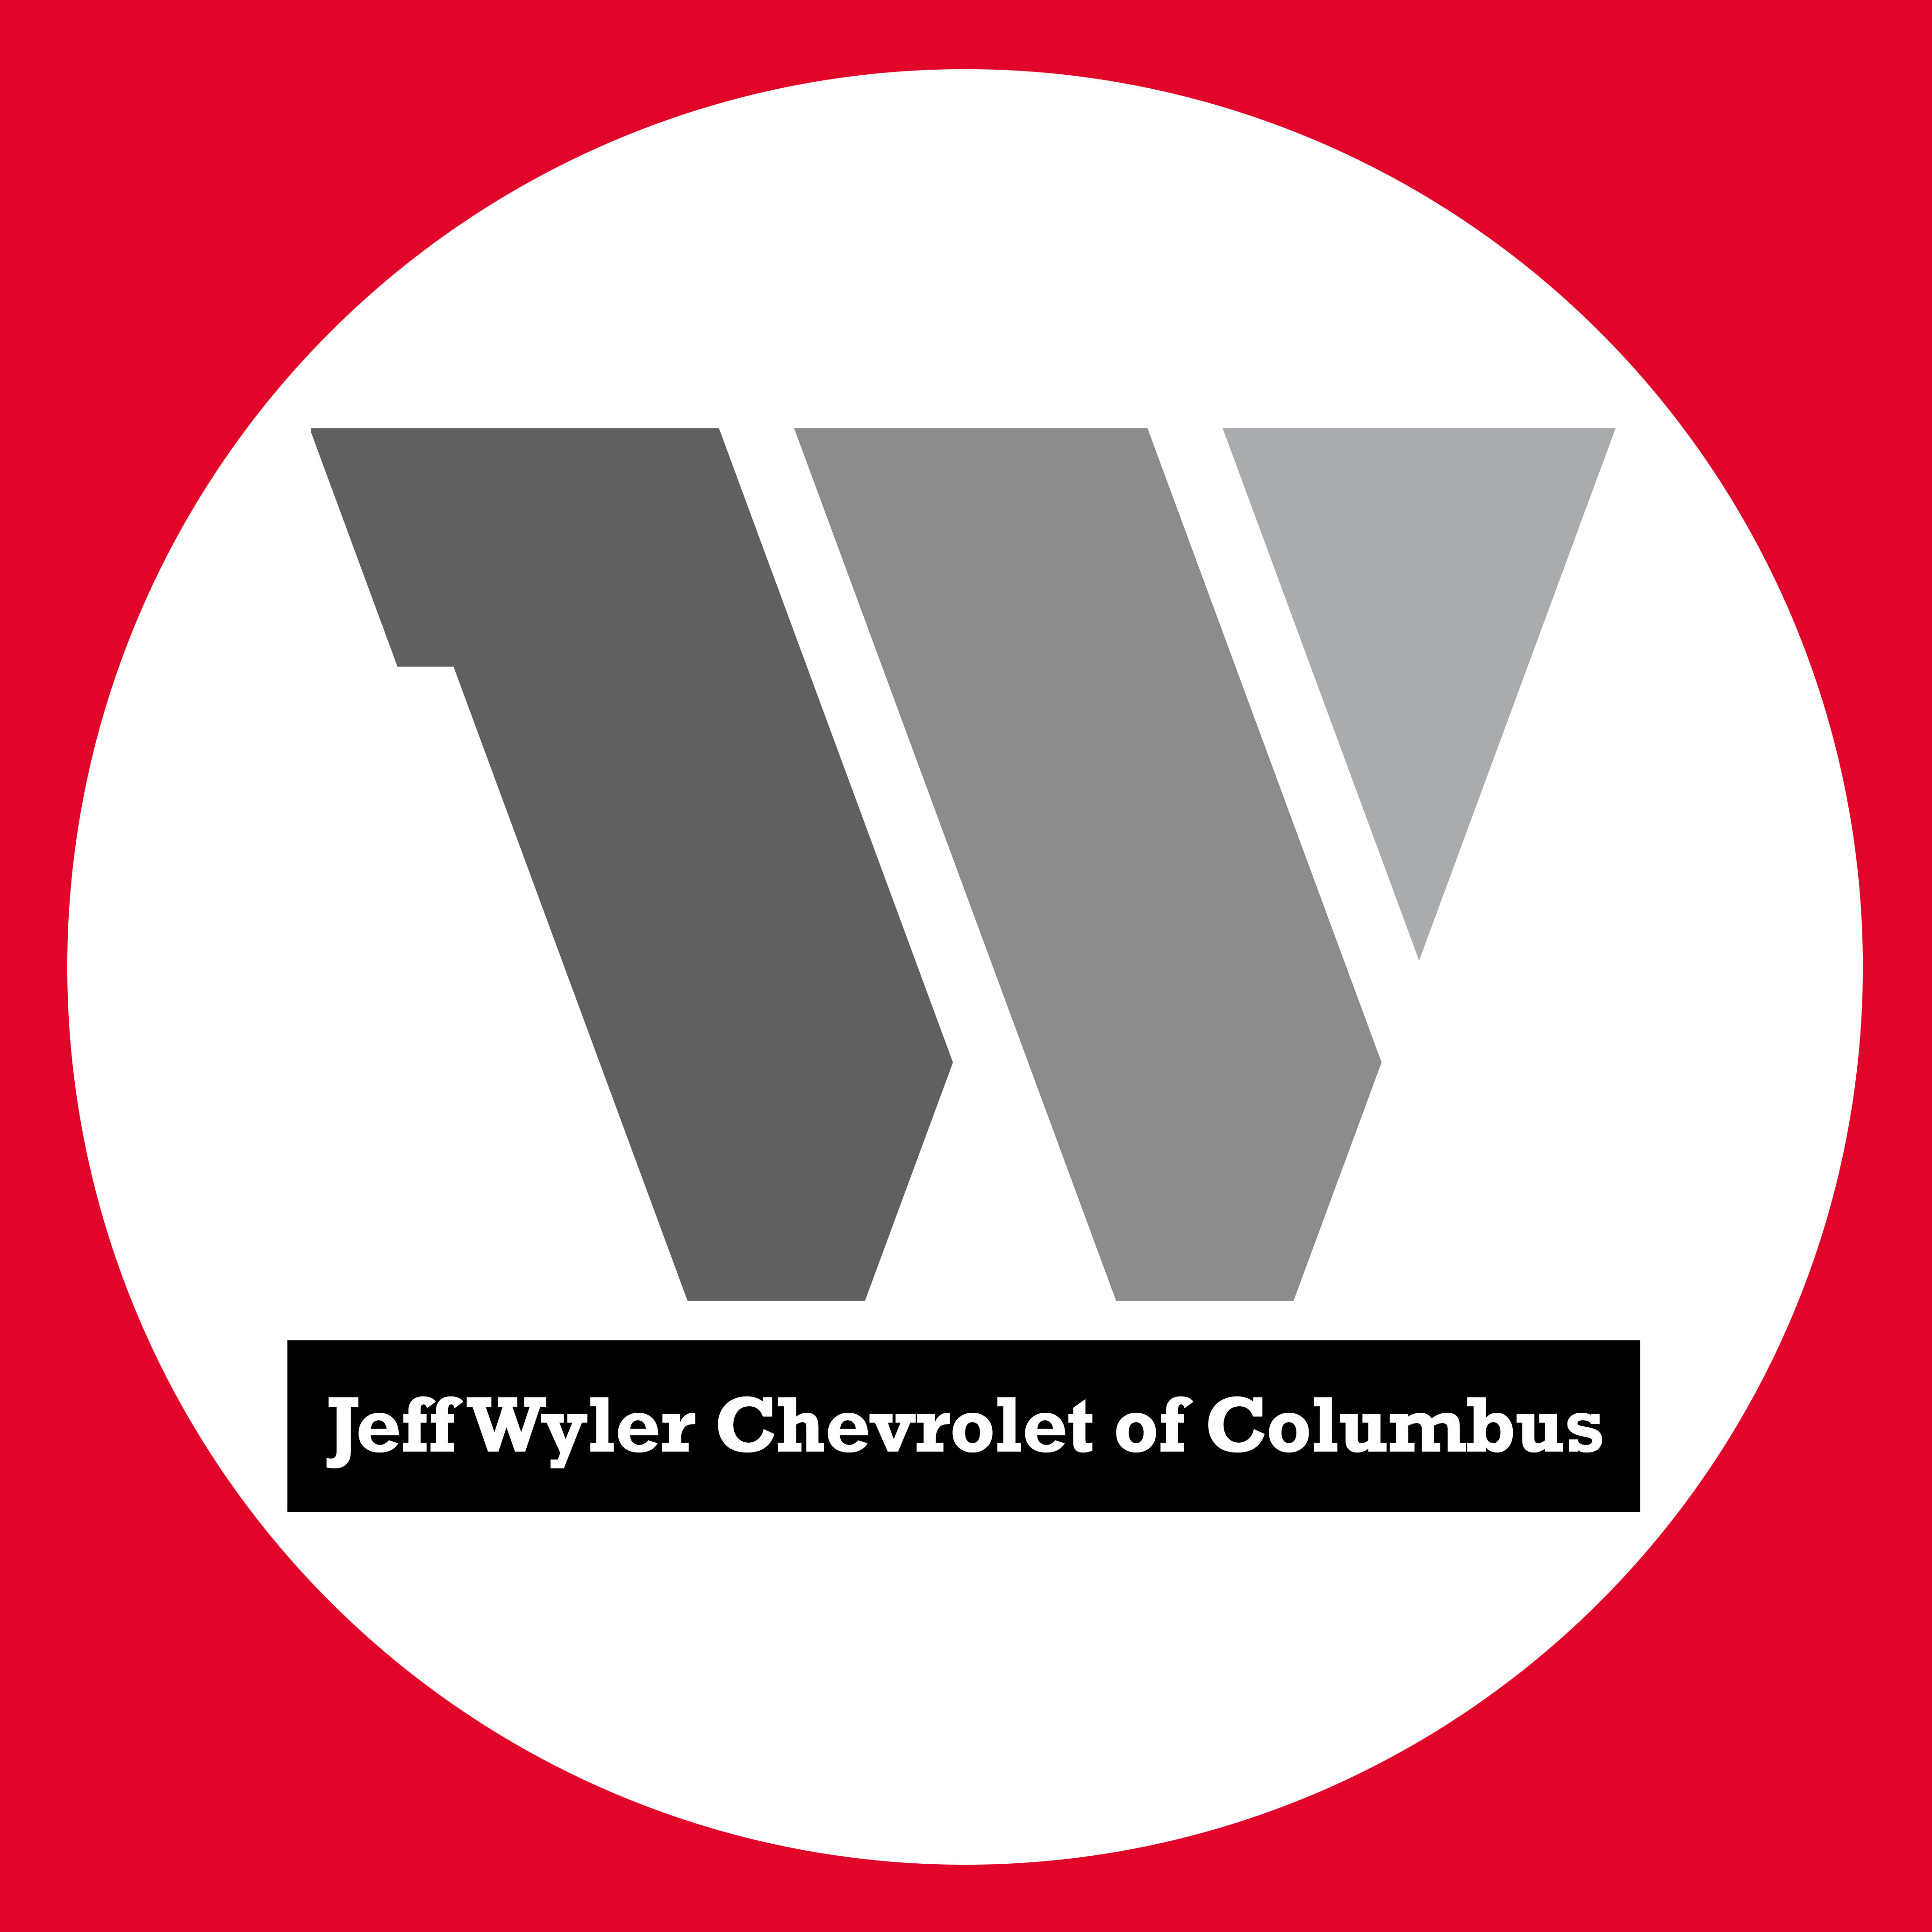 Jeff Wyler Chevrolet of Columbus - Columbus' Premier Chevy Dealer - (614) 837-3421